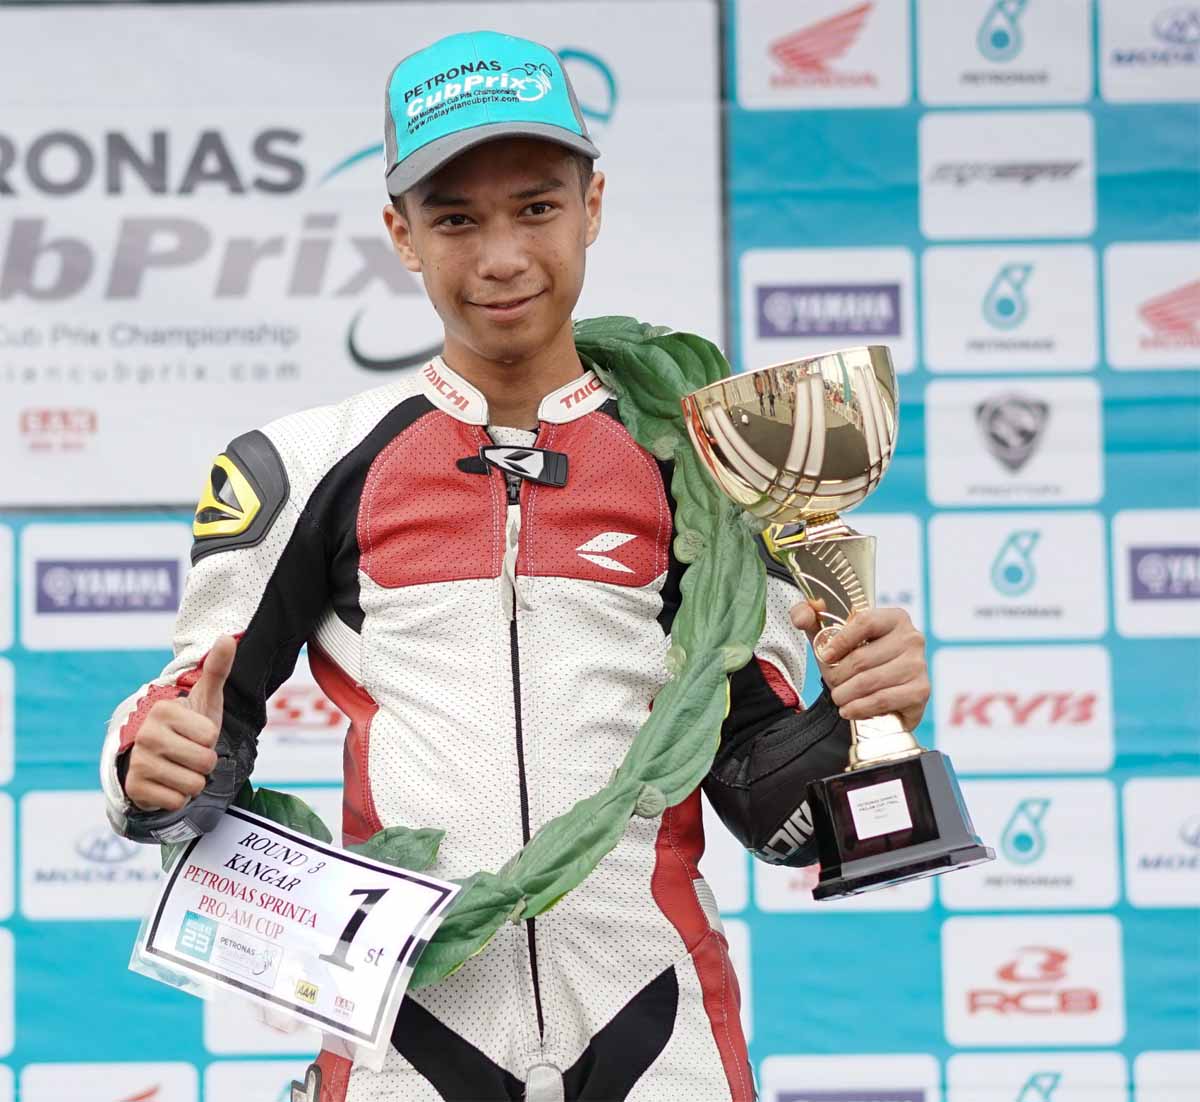 Pelumba dari Terengganu, Mu'izz Al-Atrash Abd Ghani mendahului kedudukan dengan 65 mata selepas meraih tiga podium termasuk gelaran juara di Kangar.